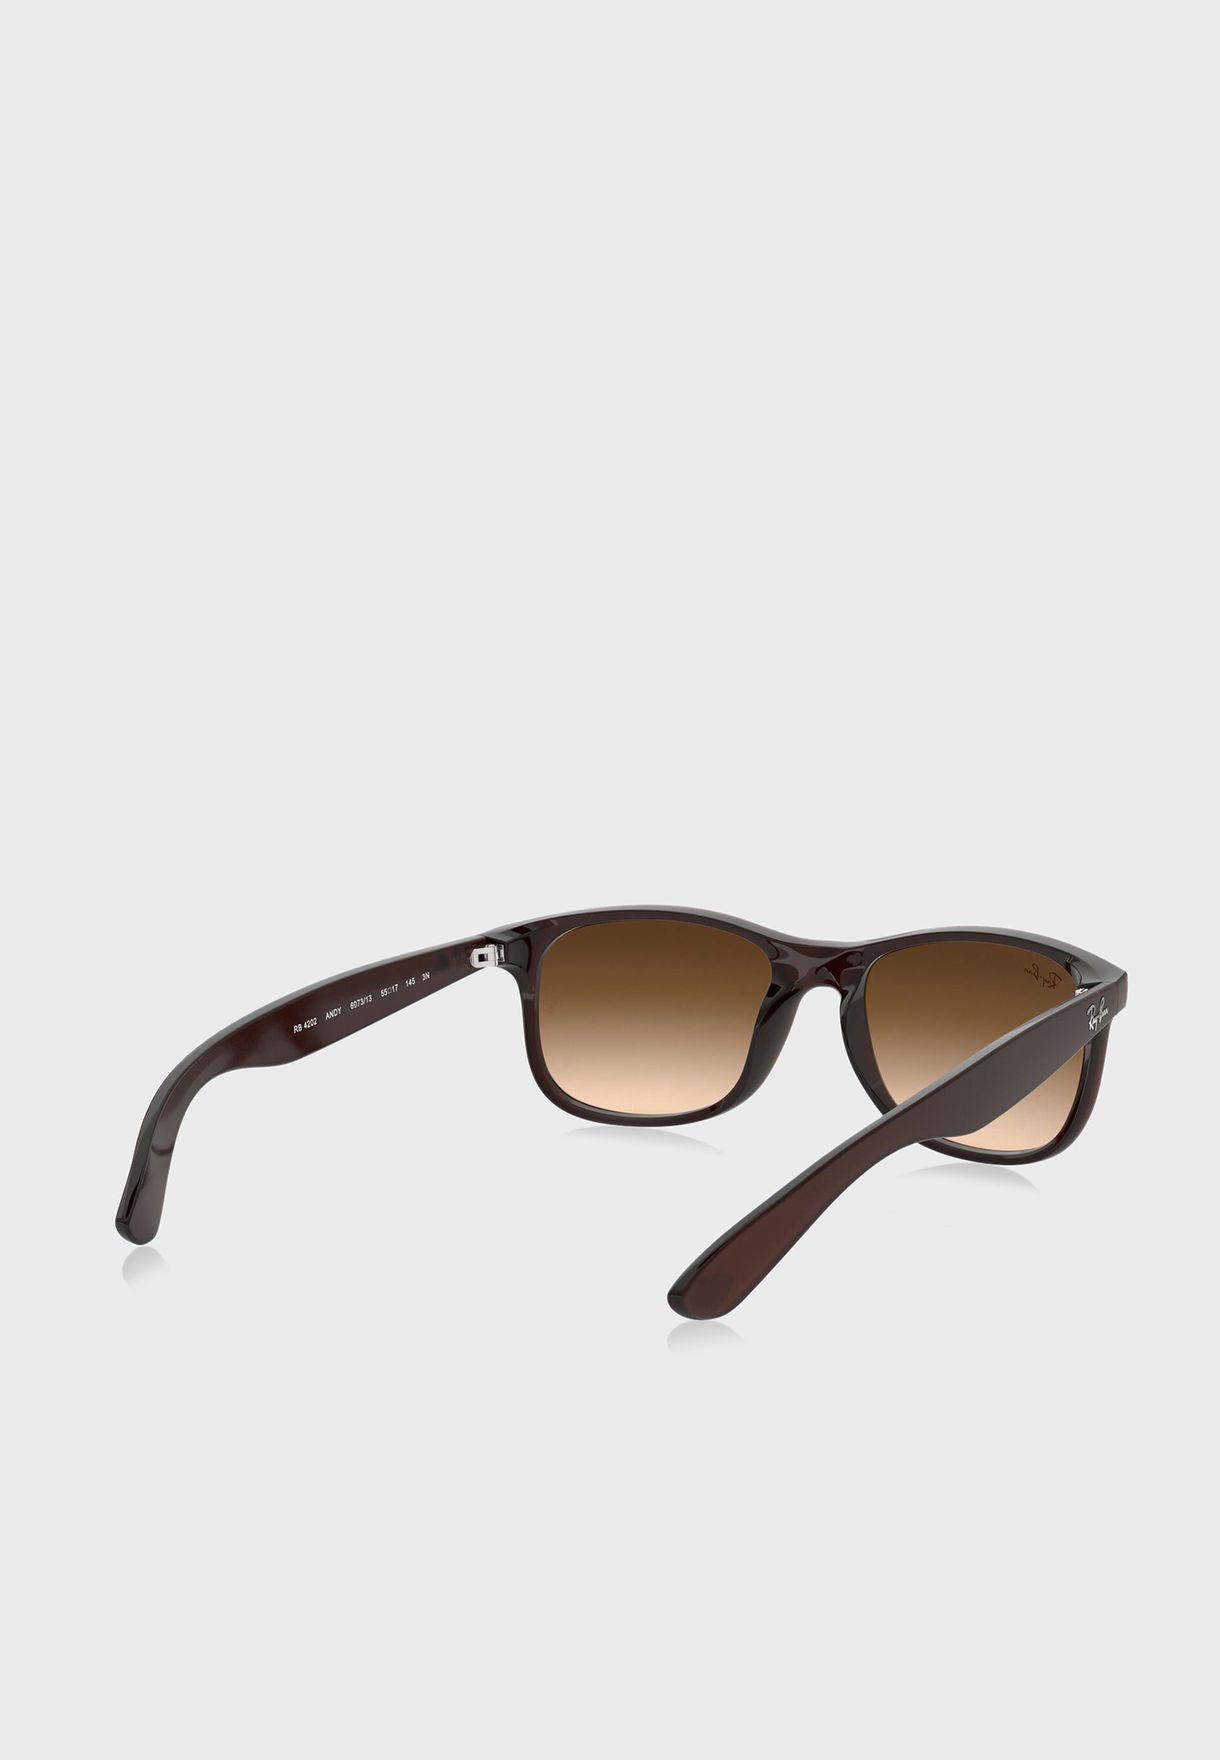 0Rb4202 Square Sunglasses